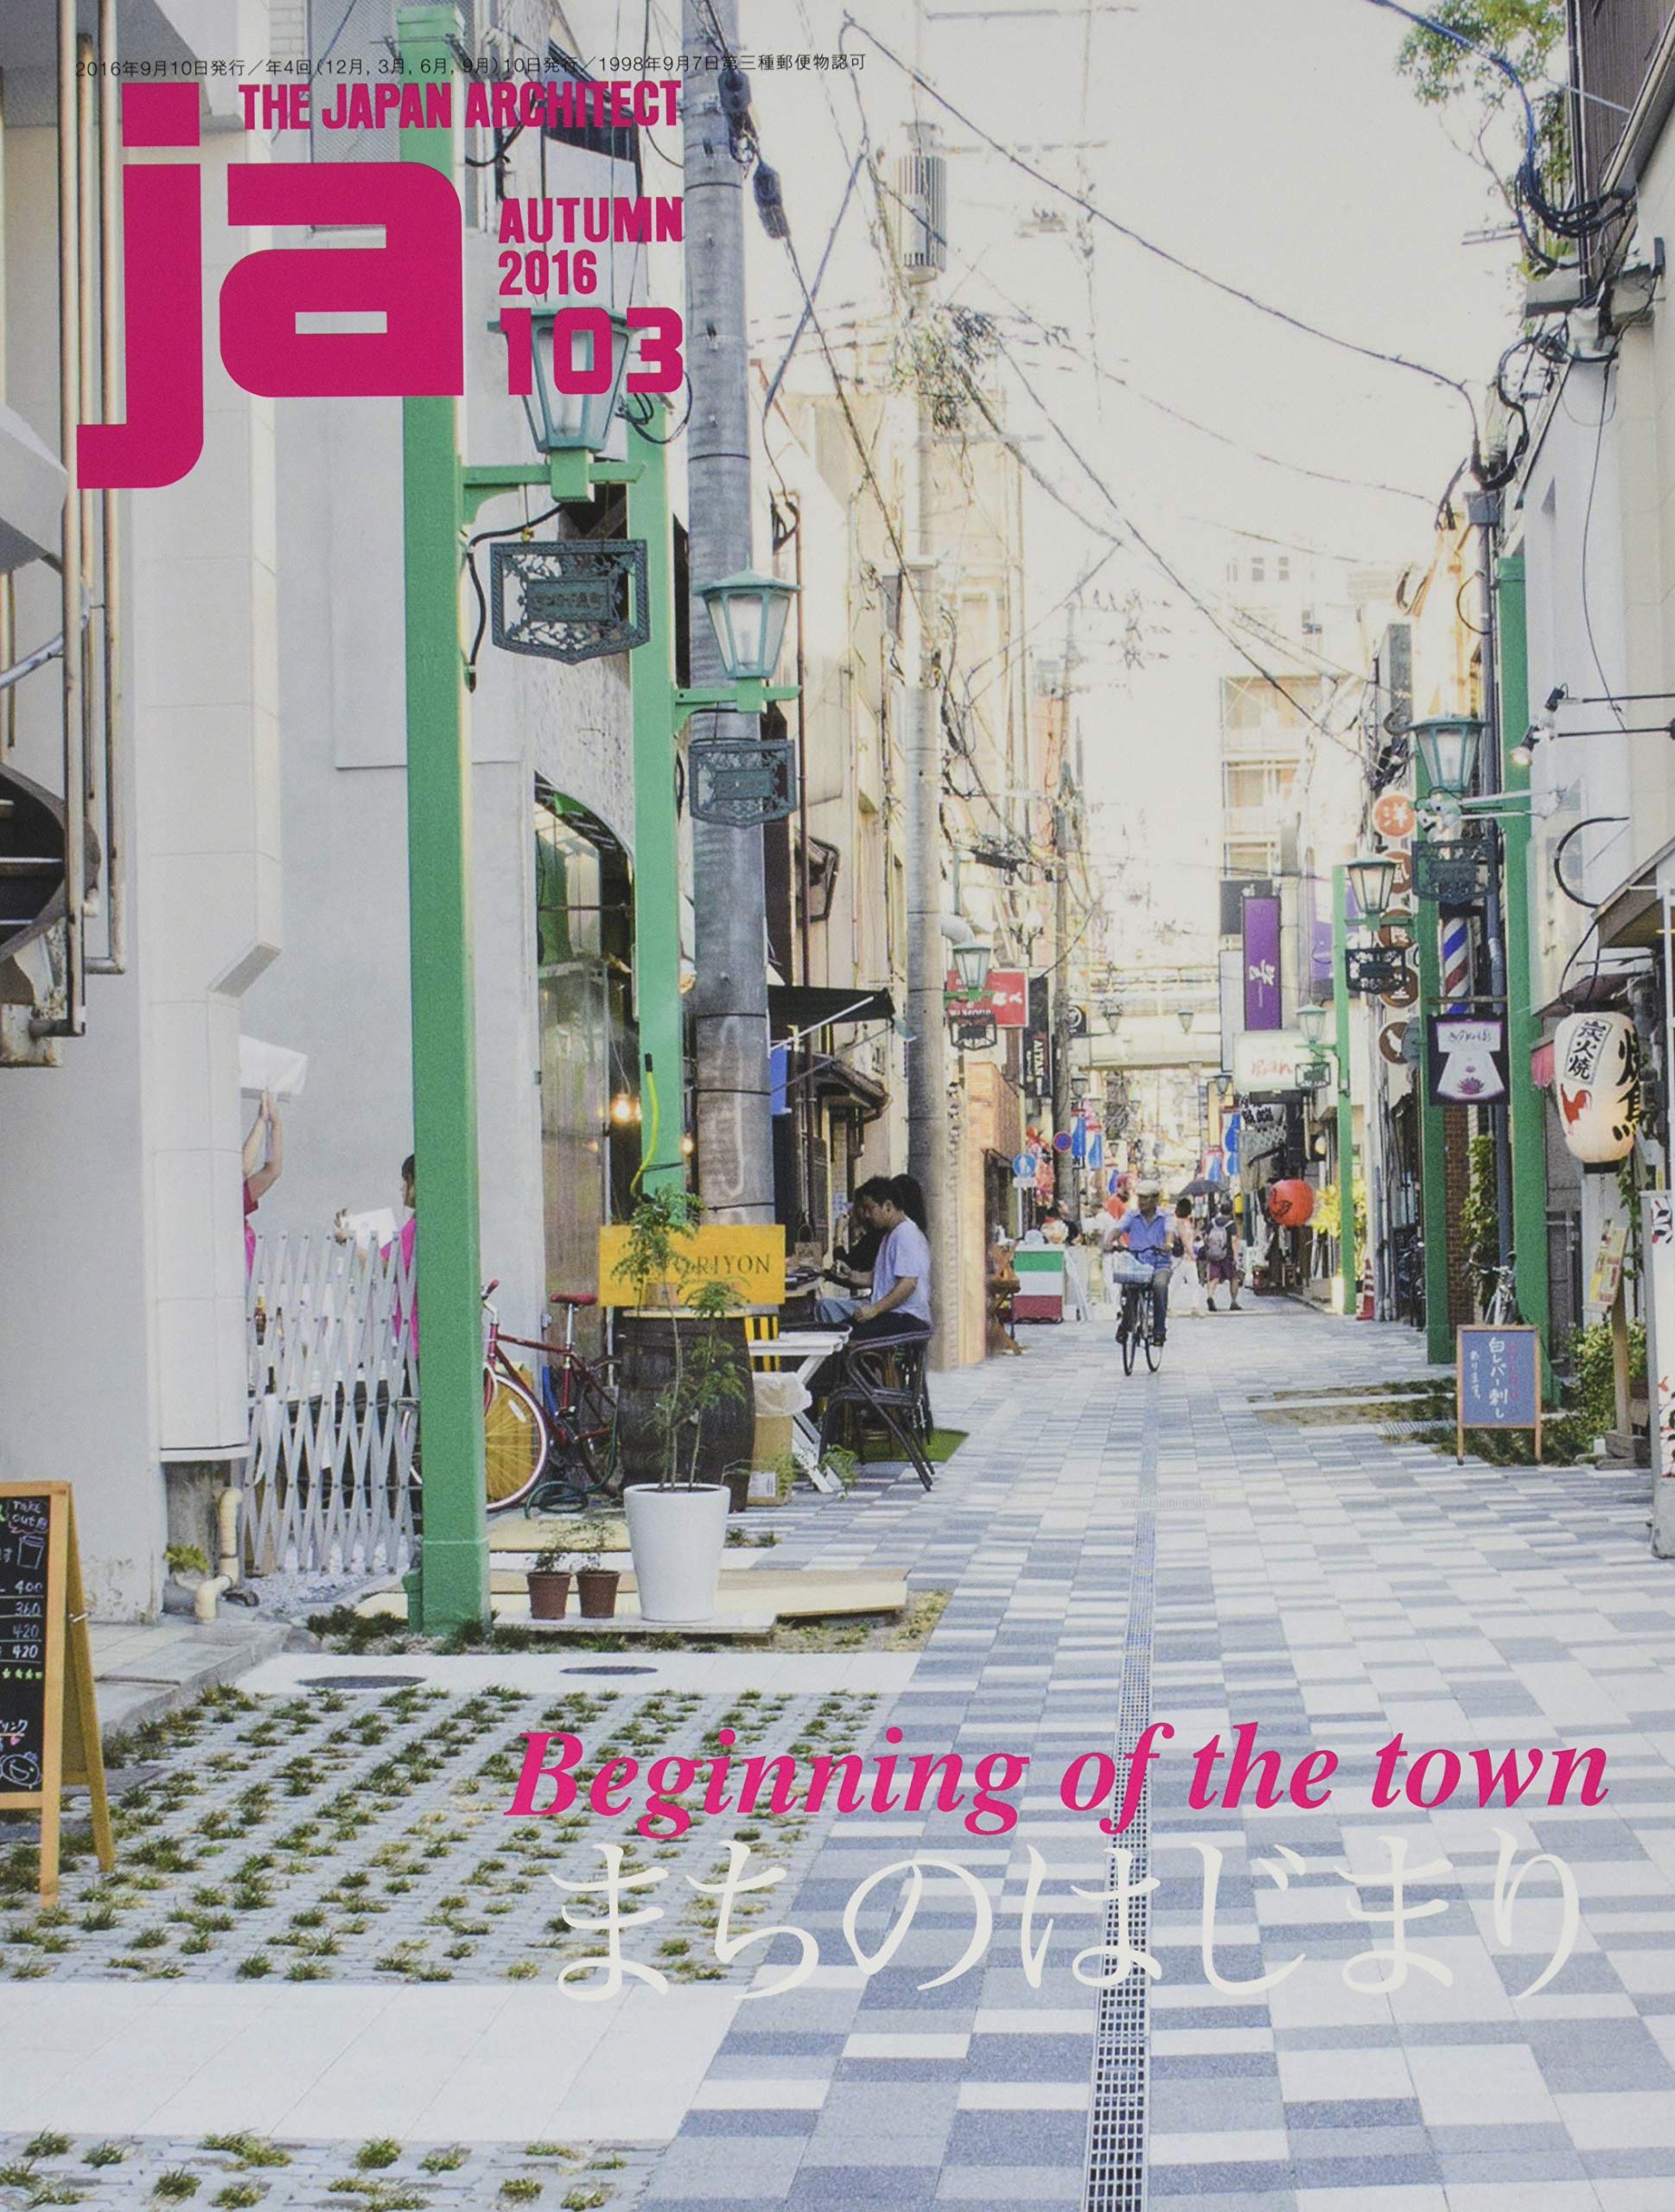 JA 103, Autumn 2016 - Beginning of the town